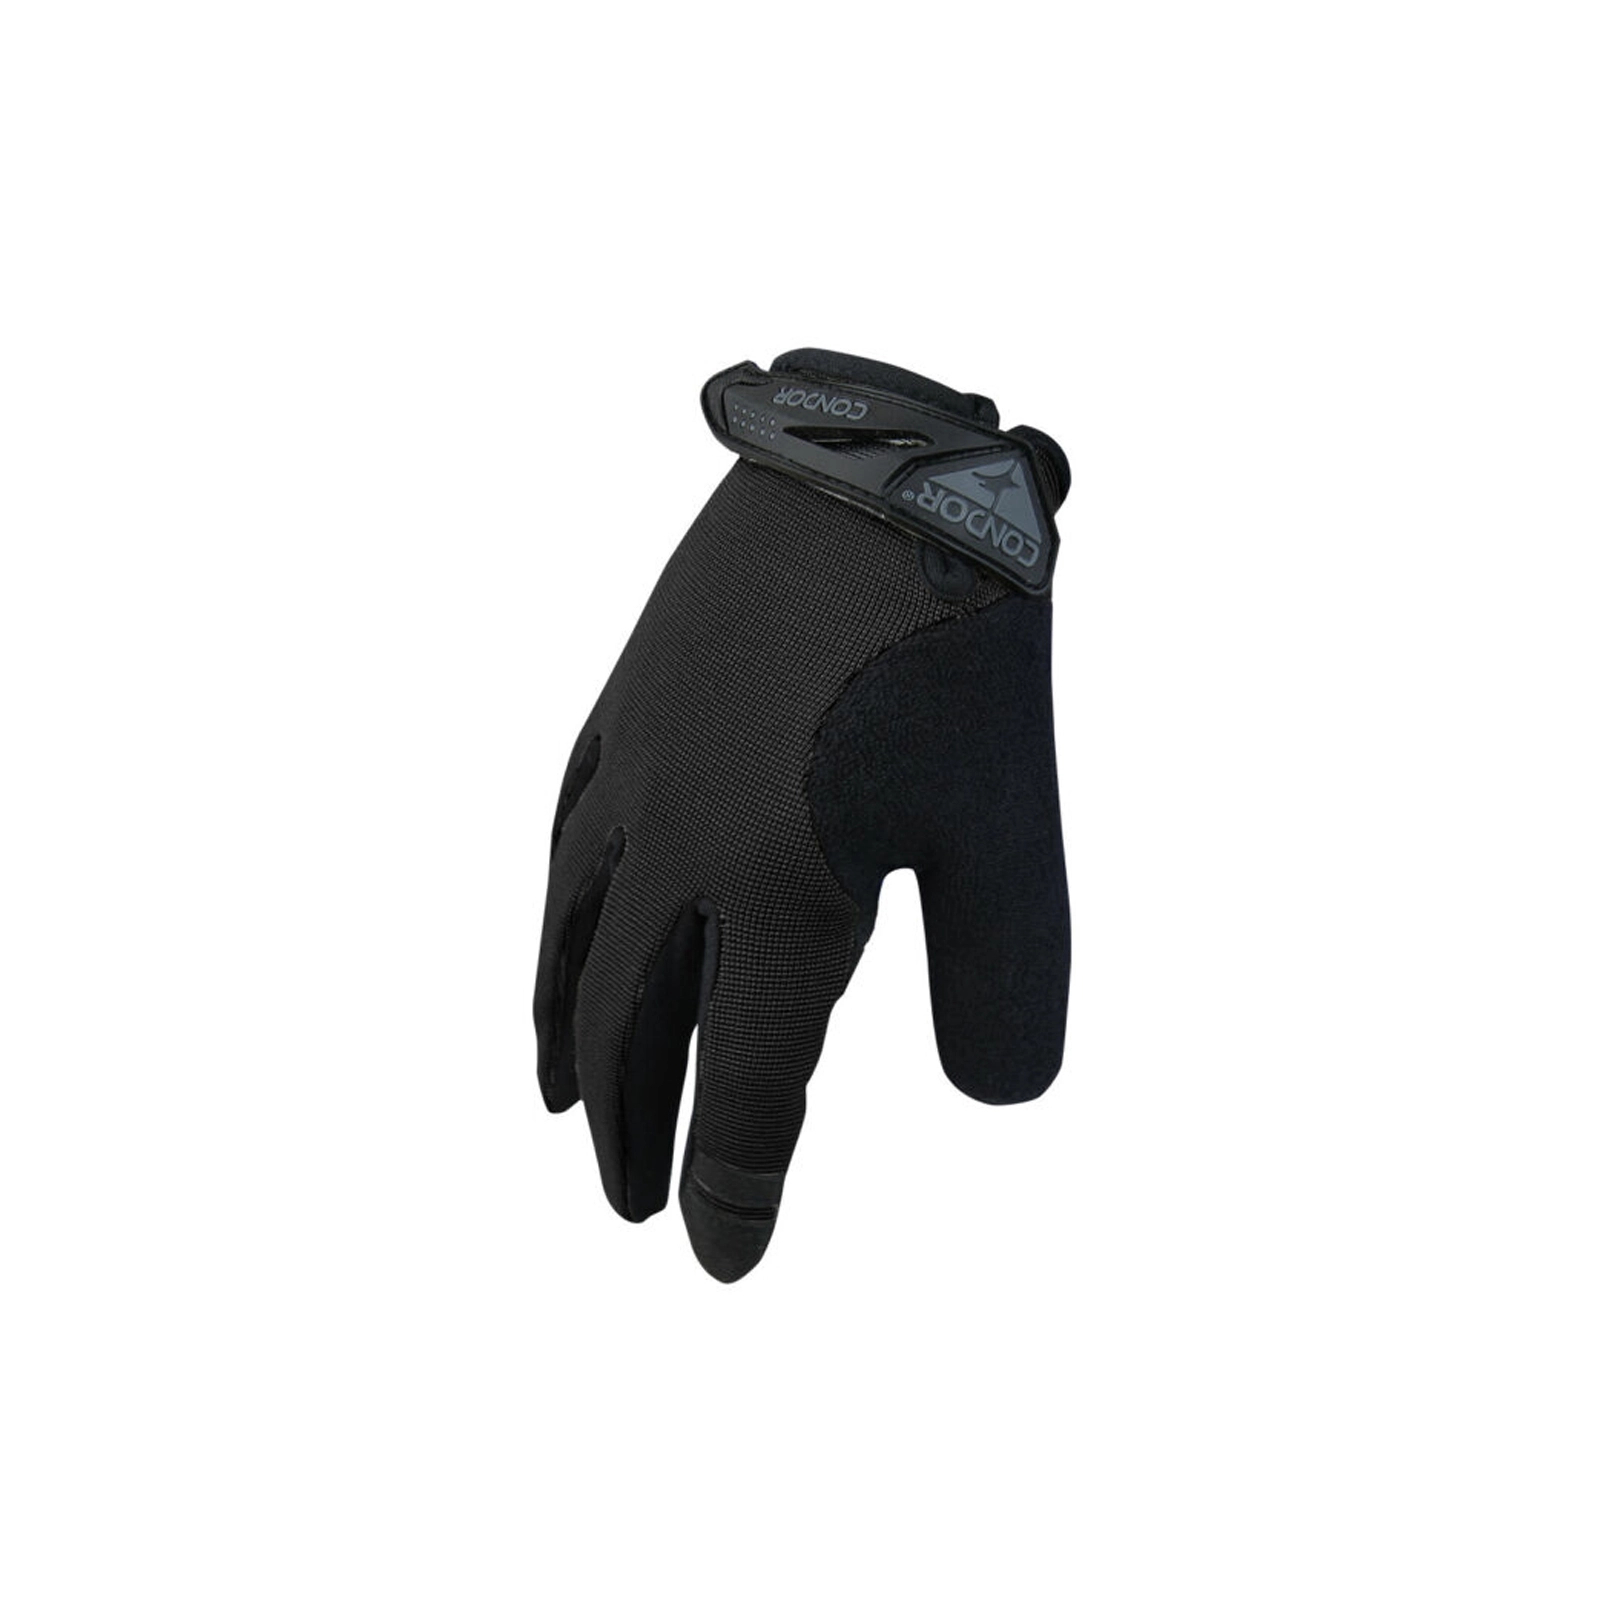 Тактические перчатки Condor-Clothing Shooter Glove 11 Black (228-002-11)